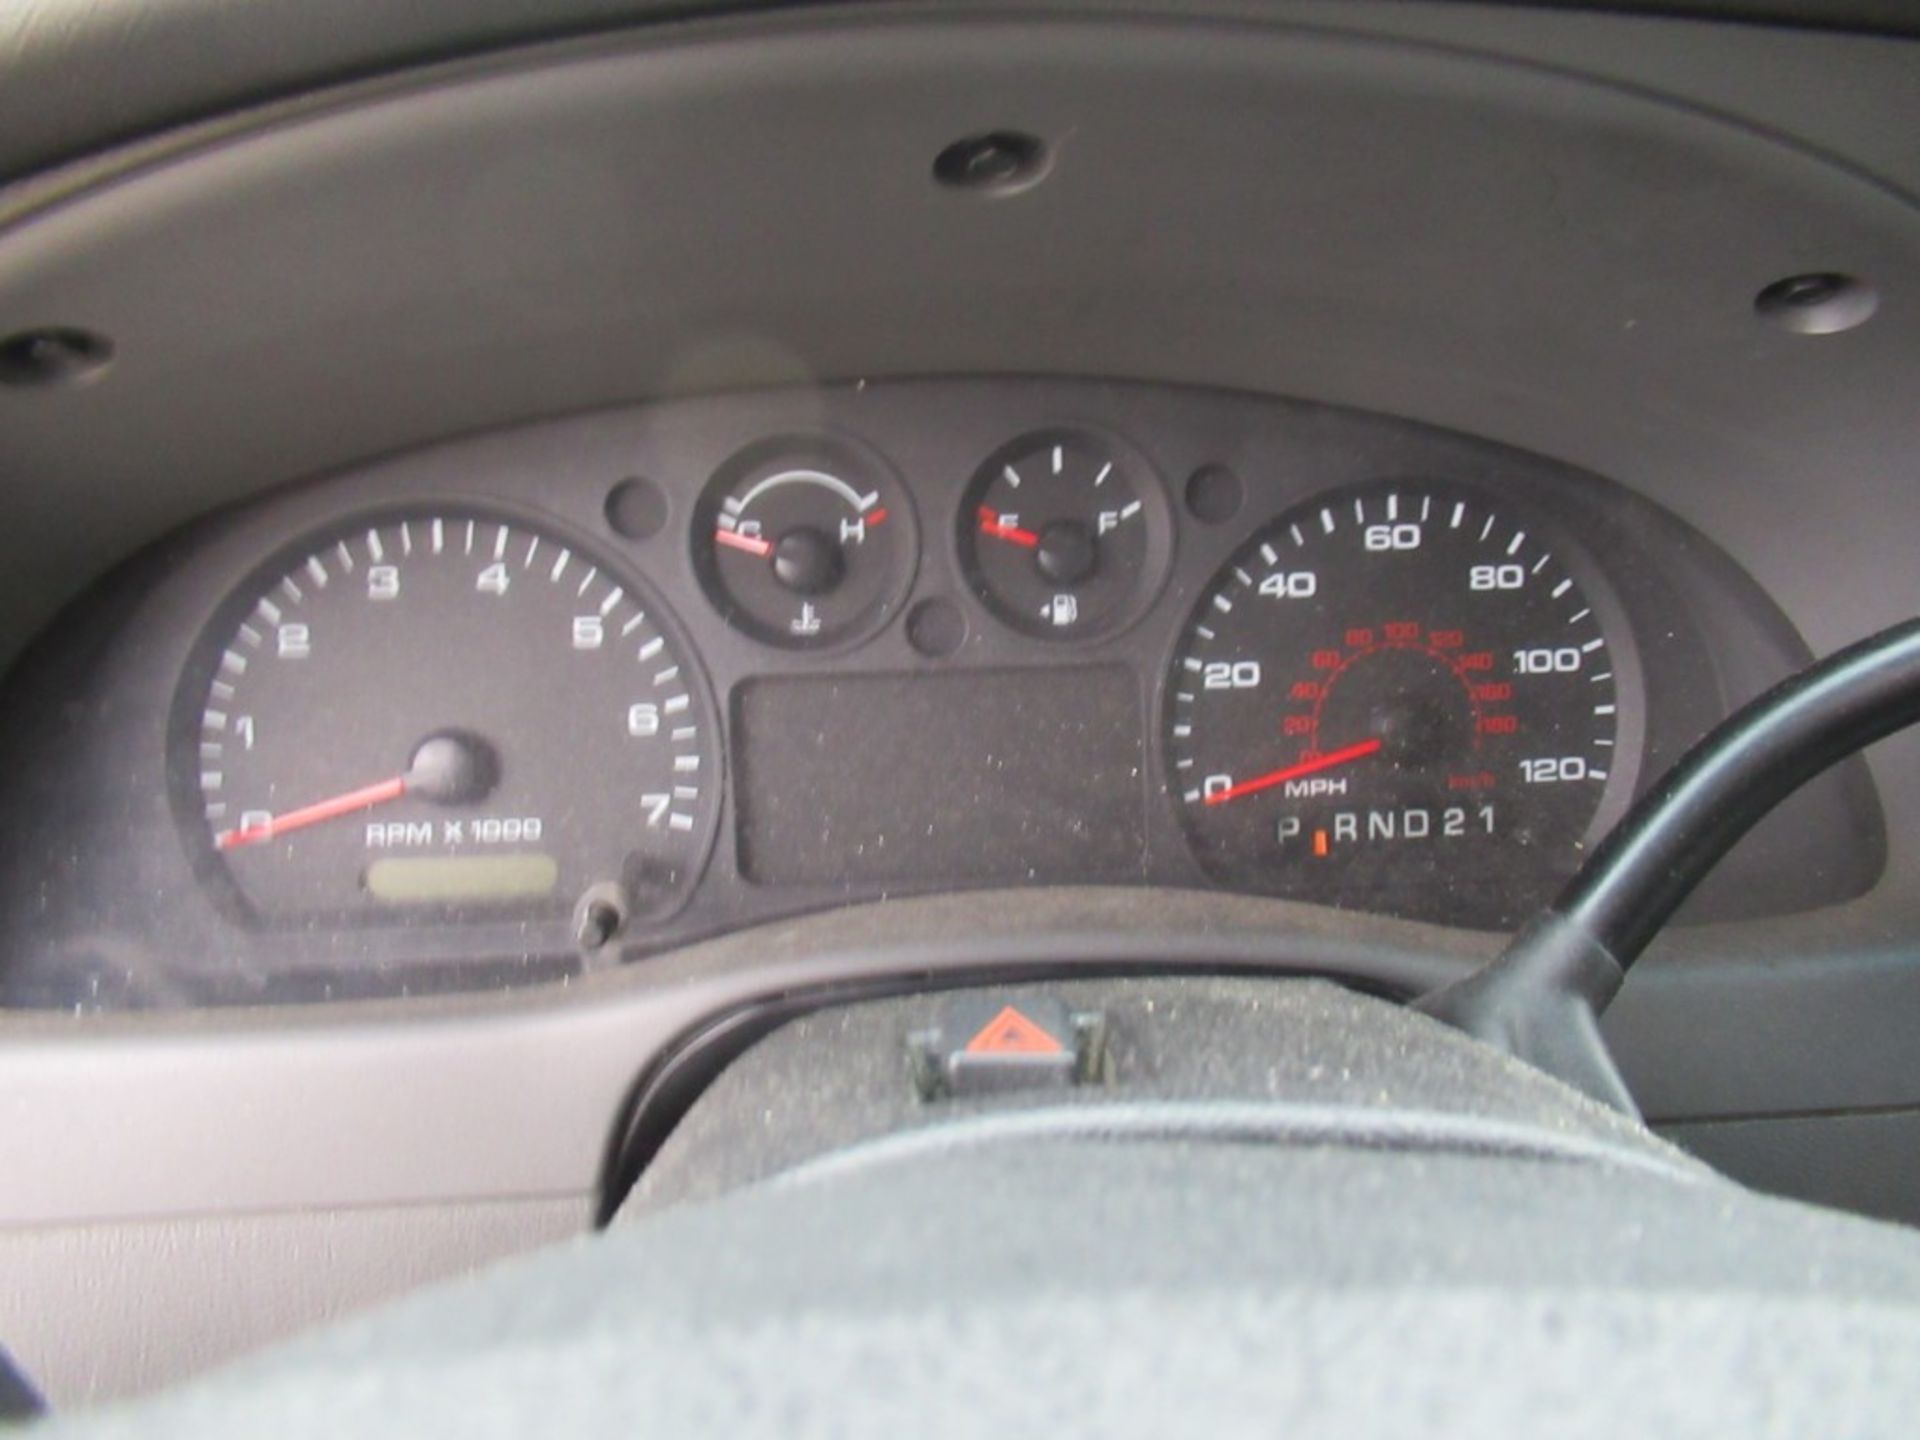 2008 Ford Ranger Pickup, VIN 1FTYR10D08PA90531 - Image 2 of 14